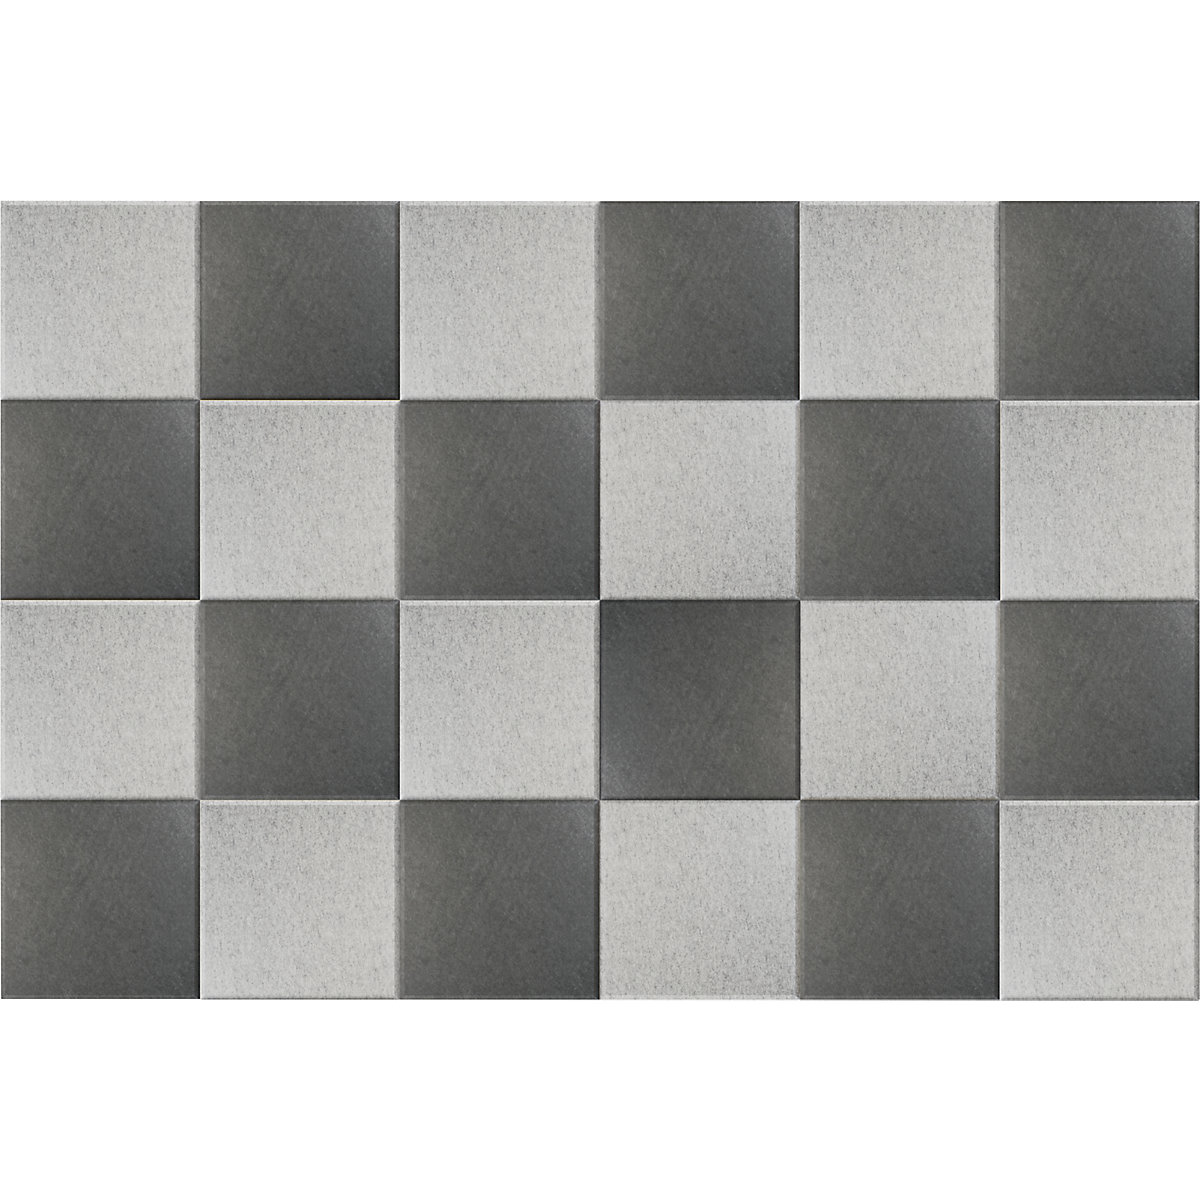 Carreau mural acoustique – eurokraft basic, h x l 300 x 300 mm, lot de 24, 12 de chaque: gris clair, gris foncé-7